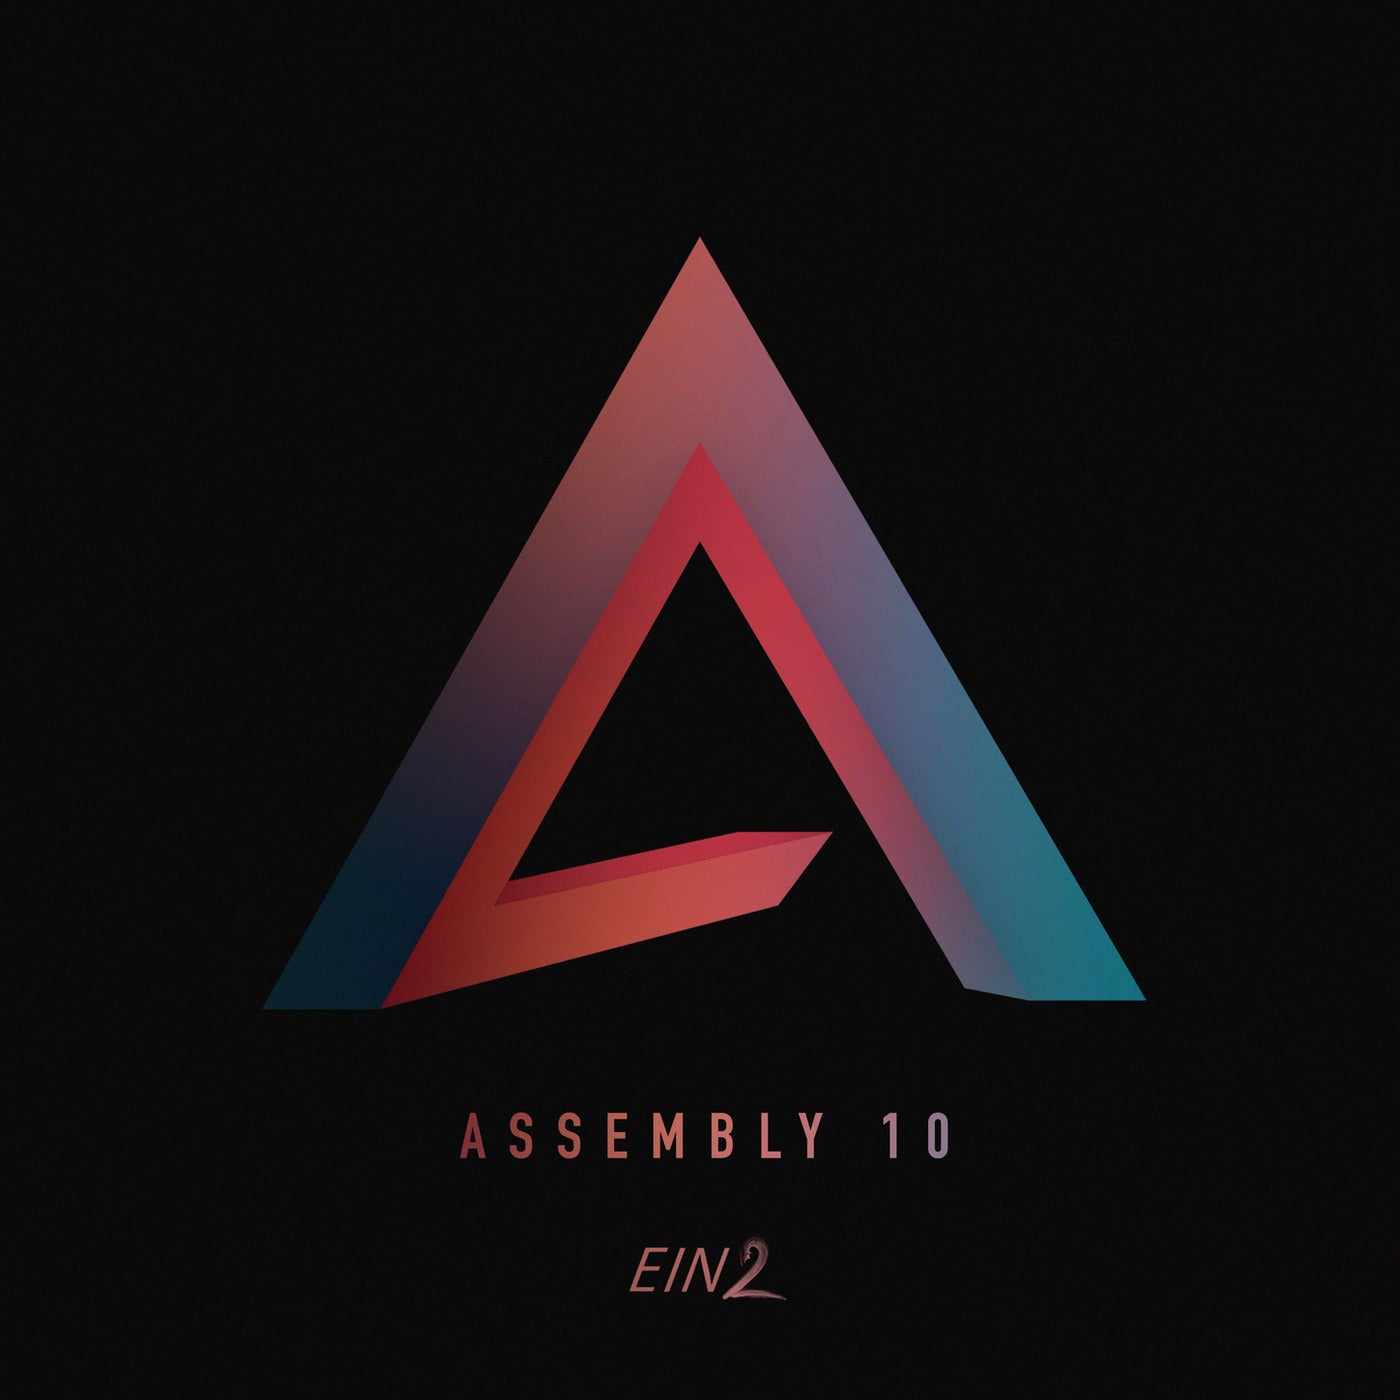 Assembly 10